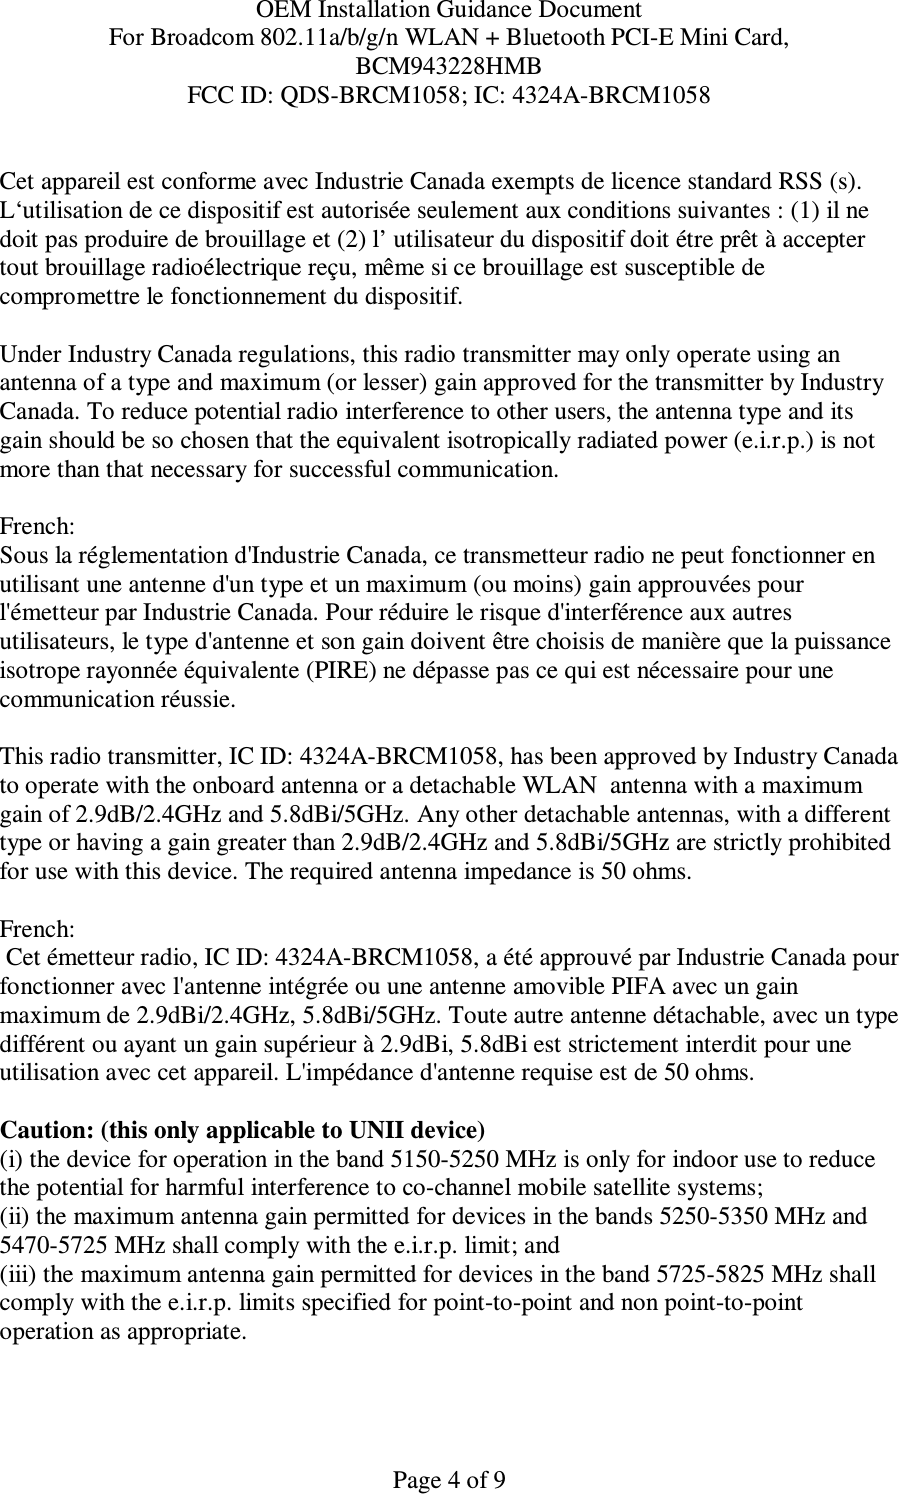 OEM Installation Guidance Document For Broadcom 802.11a/b/g/n WLAN + Bluetooth PCI-E Mini Card,  BCM943228HMB FCC ID: QDS-BRCM1058; IC: 4324A-BRCM1058   Page 4 of 9 Cet appareil est conforme avec Industrie Canada exempts de licence standard RSS (s). L‘utilisation de ce dispositif est autorisée seulement aux conditions suivantes : (1) il ne doit pas produire de brouillage et (2) l’ utilisateur du dispositif doit étre prêt à accepter tout brouillage radioélectrique reçu, même si ce brouillage est susceptible de compromettre le fonctionnement du dispositif.  Under Industry Canada regulations, this radio transmitter may only operate using an antenna of a type and maximum (or lesser) gain approved for the transmitter by Industry Canada. To reduce potential radio interference to other users, the antenna type and its gain should be so chosen that the equivalent isotropically radiated power (e.i.r.p.) is not more than that necessary for successful communication.  French:  Sous la réglementation d&apos;Industrie Canada, ce transmetteur radio ne peut fonctionner en utilisant une antenne d&apos;un type et un maximum (ou moins) gain approuvées pour l&apos;émetteur par Industrie Canada. Pour réduire le risque d&apos;interférence aux autres utilisateurs, le type d&apos;antenne et son gain doivent être choisis de manière que la puissance isotrope rayonnée équivalente (PIRE) ne dépasse pas ce qui est nécessaire pour une communication réussie.  This radio transmitter, IC ID: 4324A-BRCM1058, has been approved by Industry Canada to operate with the onboard antenna or a detachable WLAN  antenna with a maximum gain of 2.9dB/2.4GHz and 5.8dBi/5GHz. Any other detachable antennas, with a different type or having a gain greater than 2.9dB/2.4GHz and 5.8dBi/5GHz are strictly prohibited for use with this device. The required antenna impedance is 50 ohms.  French:   Cet émetteur radio, IC ID: 4324A-BRCM1058, a été approuvé par Industrie Canada pour fonctionner avec l&apos;antenne intégrée ou une antenne amovible PIFA avec un gain maximum de 2.9dBi/2.4GHz, 5.8dBi/5GHz. Toute autre antenne détachable, avec un type différent ou ayant un gain supérieur à 2.9dBi, 5.8dBi est strictement interdit pour une utilisation avec cet appareil. L&apos;impédance d&apos;antenne requise est de 50 ohms.  Caution: (this only applicable to UNII device) (i) the device for operation in the band 5150-5250 MHz is only for indoor use to reduce the potential for harmful interference to co-channel mobile satellite systems; (ii) the maximum antenna gain permitted for devices in the bands 5250-5350 MHz and 5470-5725 MHz shall comply with the e.i.r.p. limit; and (iii) the maximum antenna gain permitted for devices in the band 5725-5825 MHz shall comply with the e.i.r.p. limits specified for point-to-point and non point-to-point operation as appropriate. 